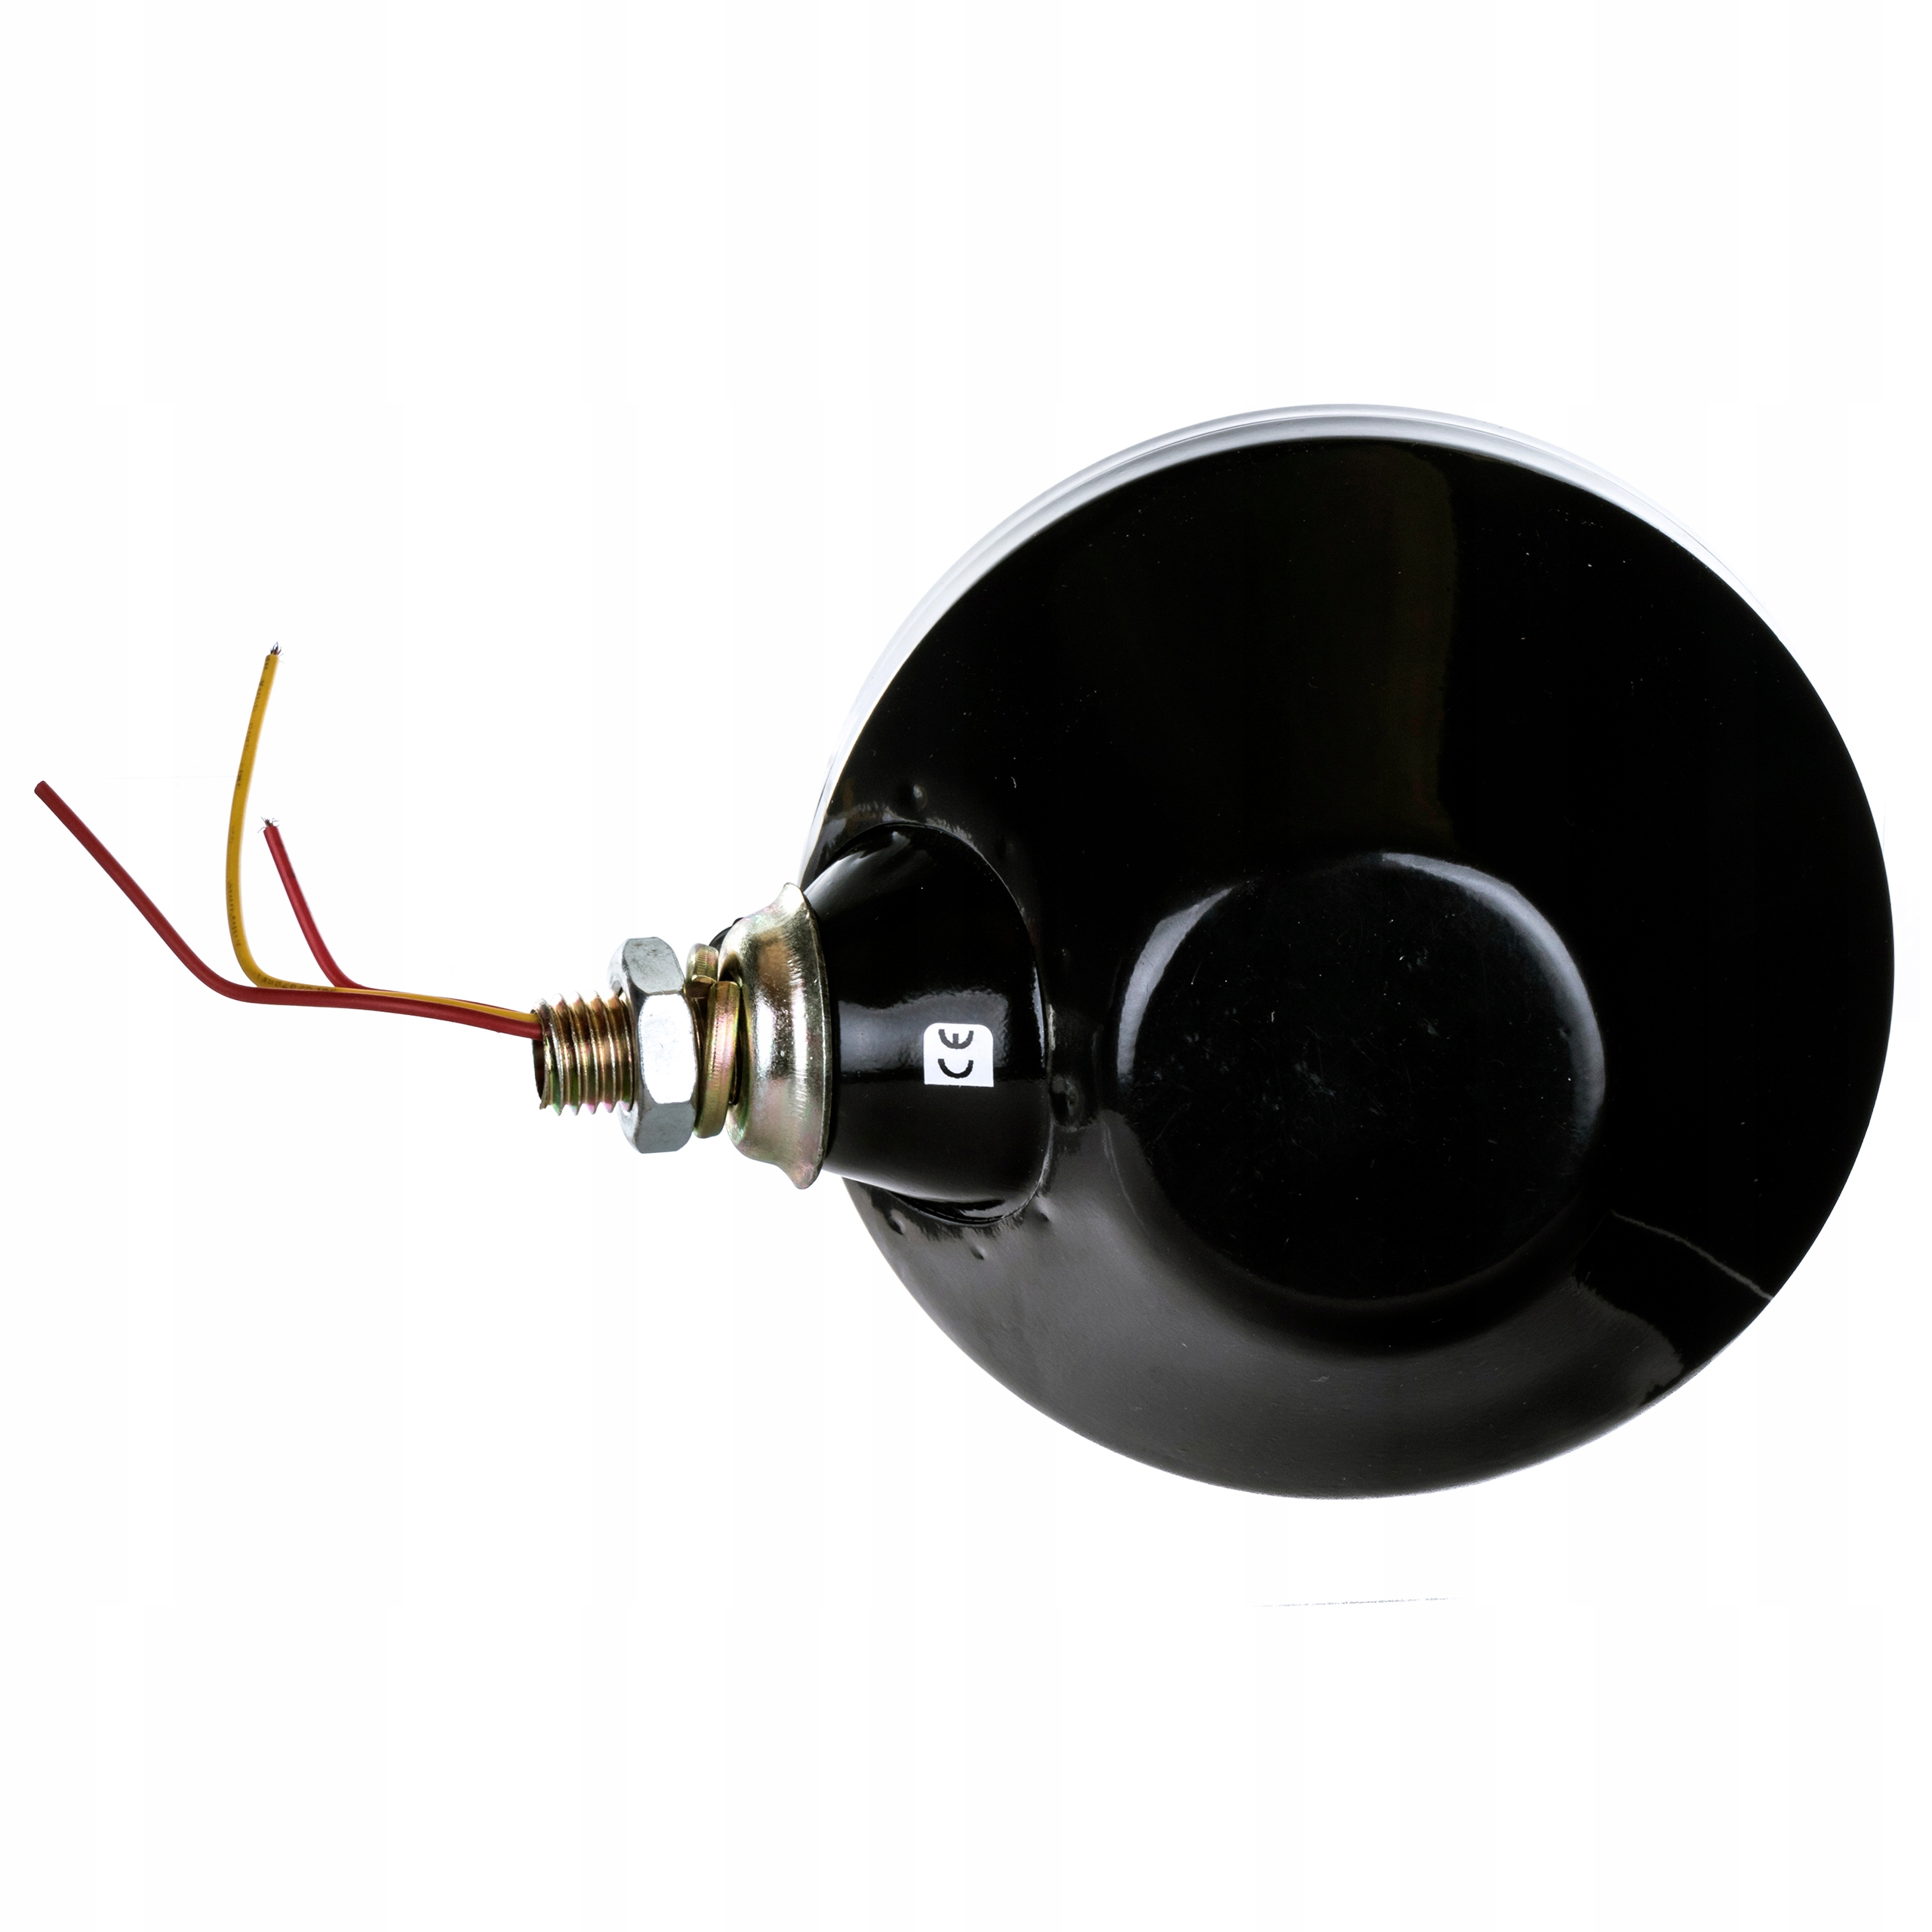 Передняя правая лампа C330 c360 C385 T25 производитель часть Mizar